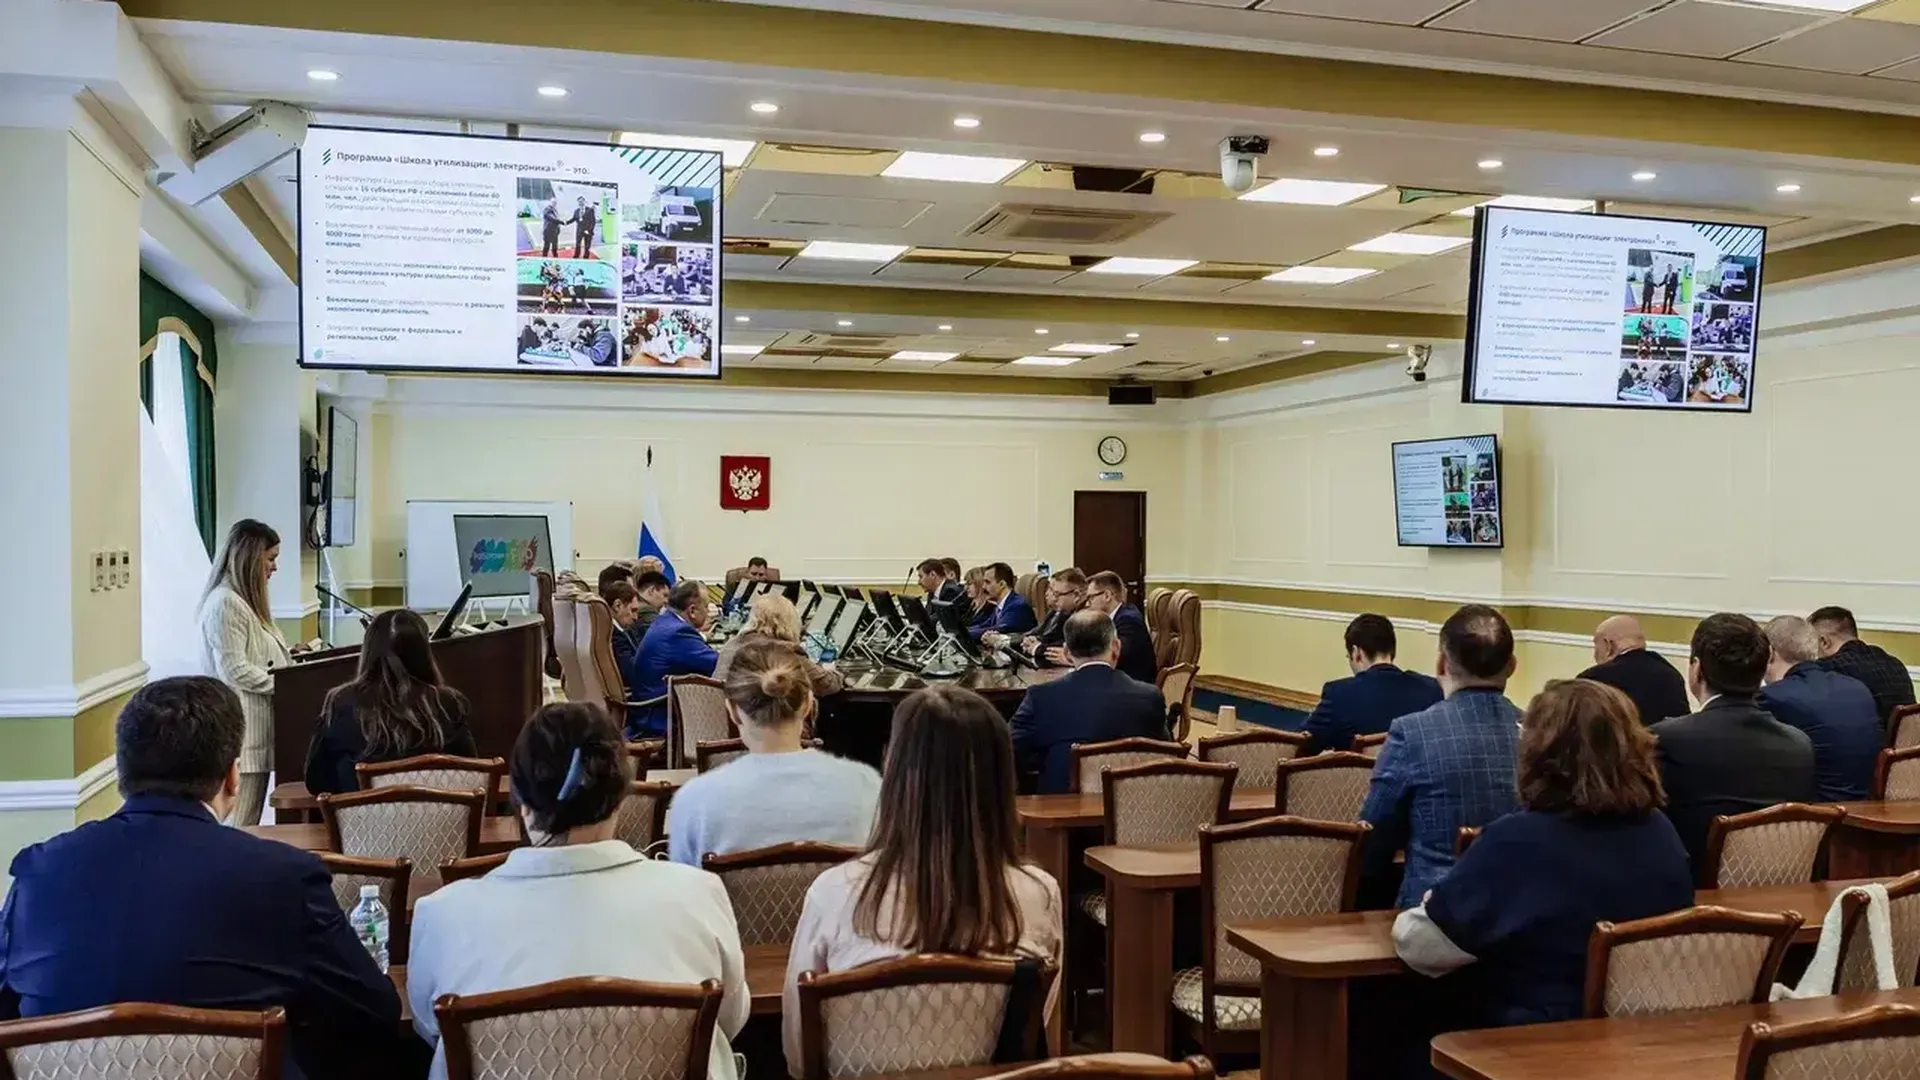 Минэкологии Подмосковья наградили за проект школы по утилизации электроники